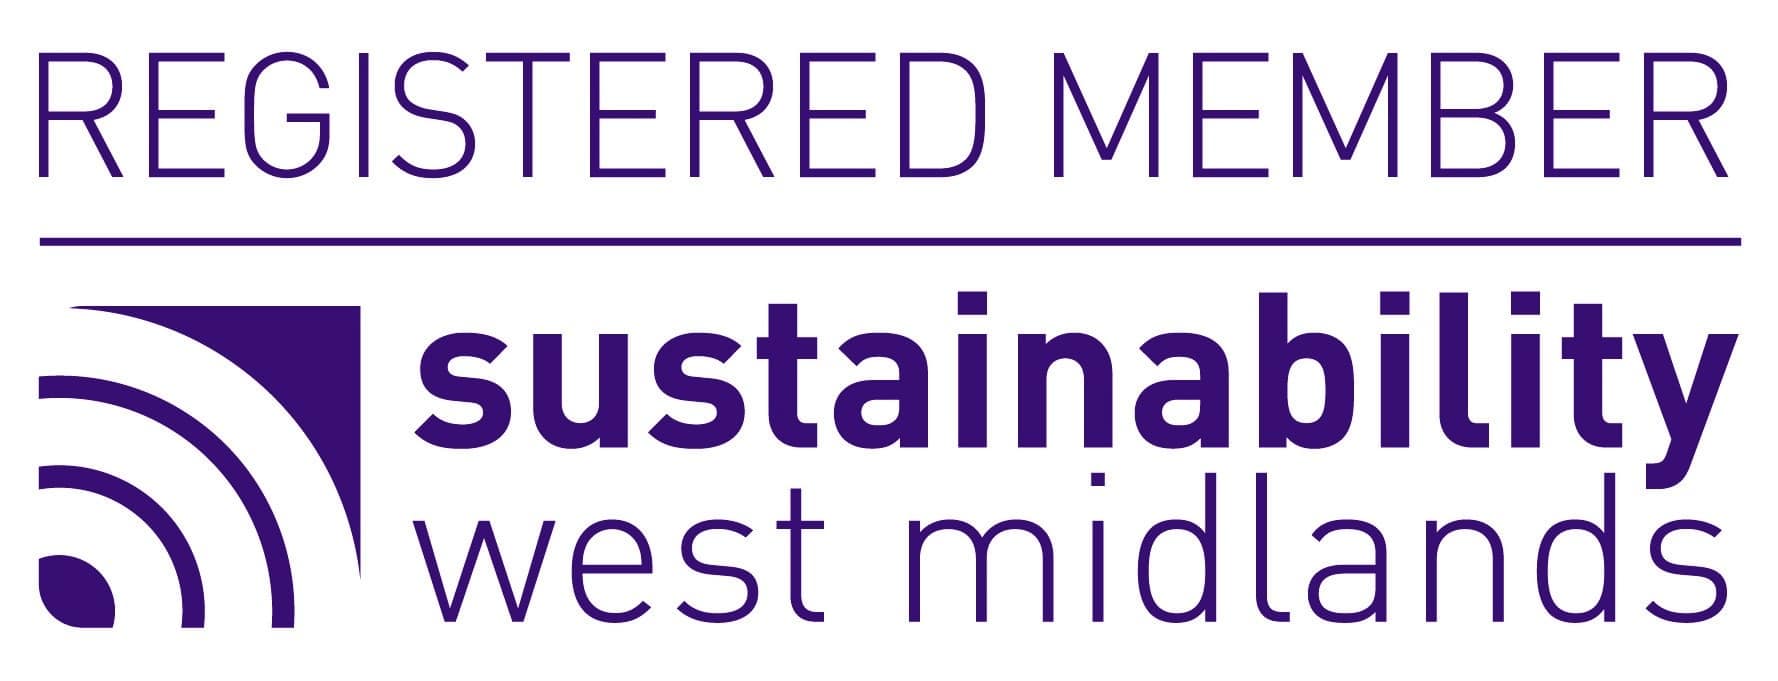 New West Midlands Sustainability Member Logo